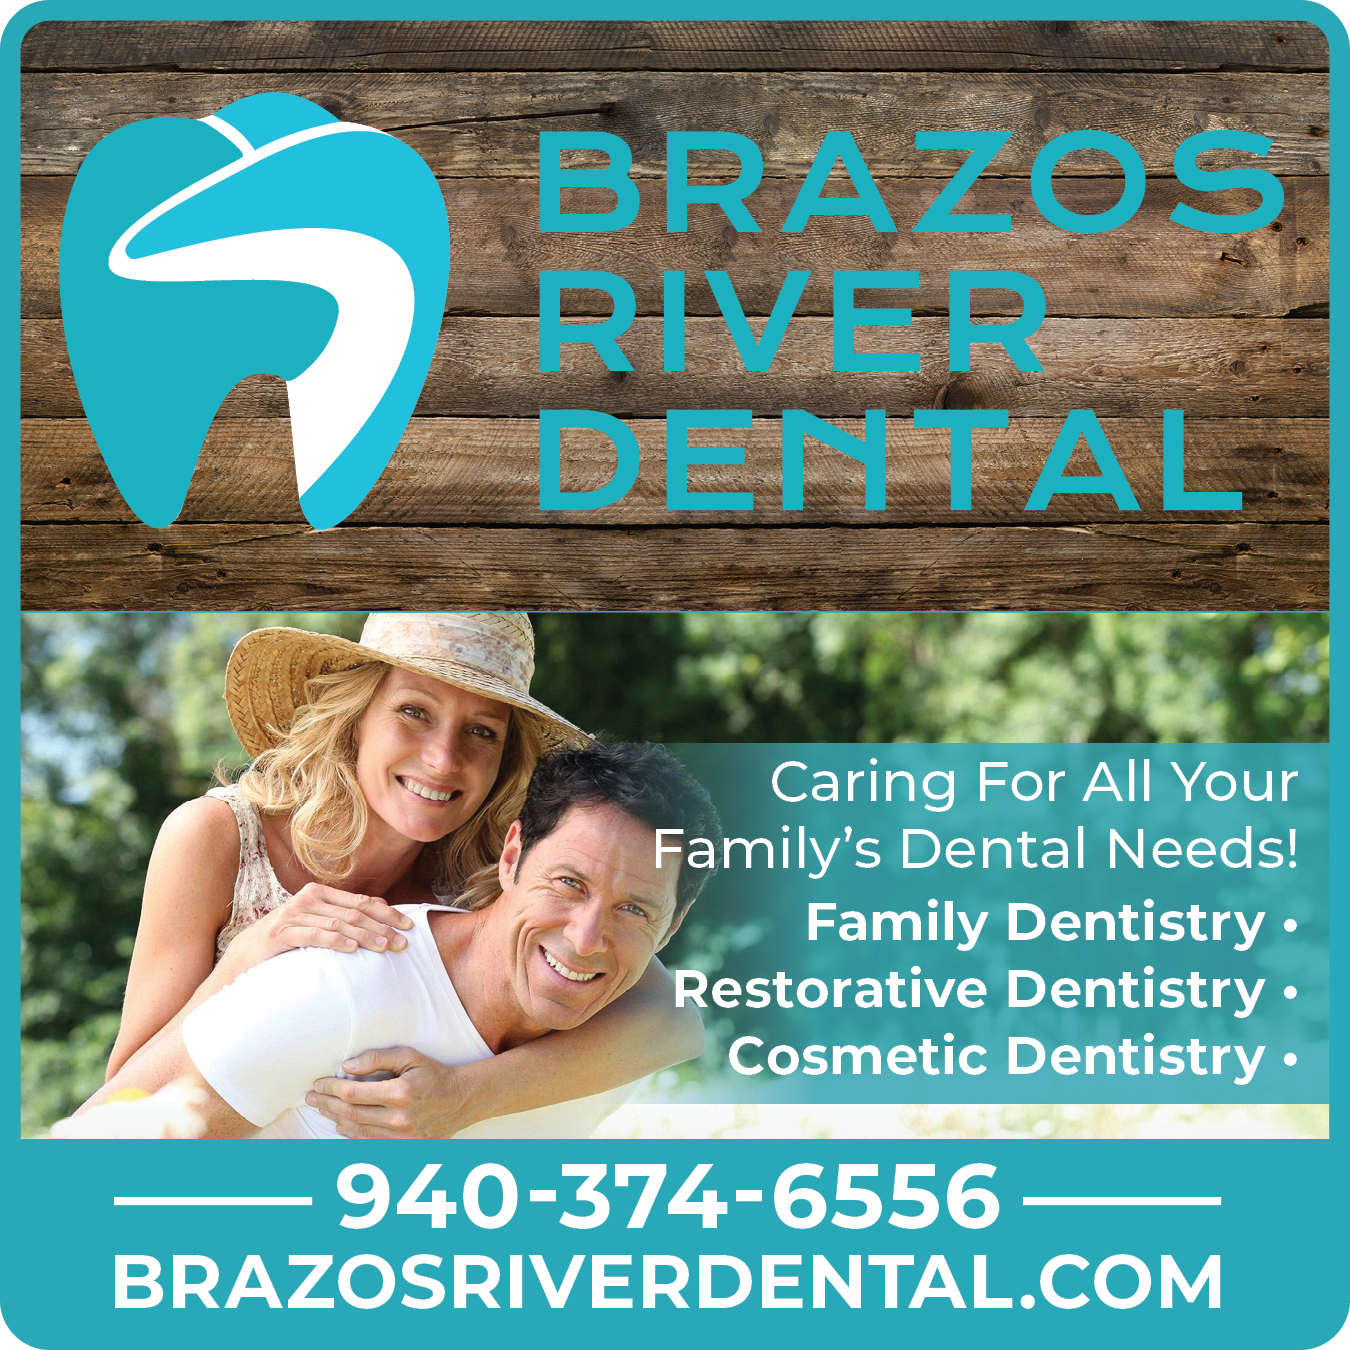 Brazos River Dental